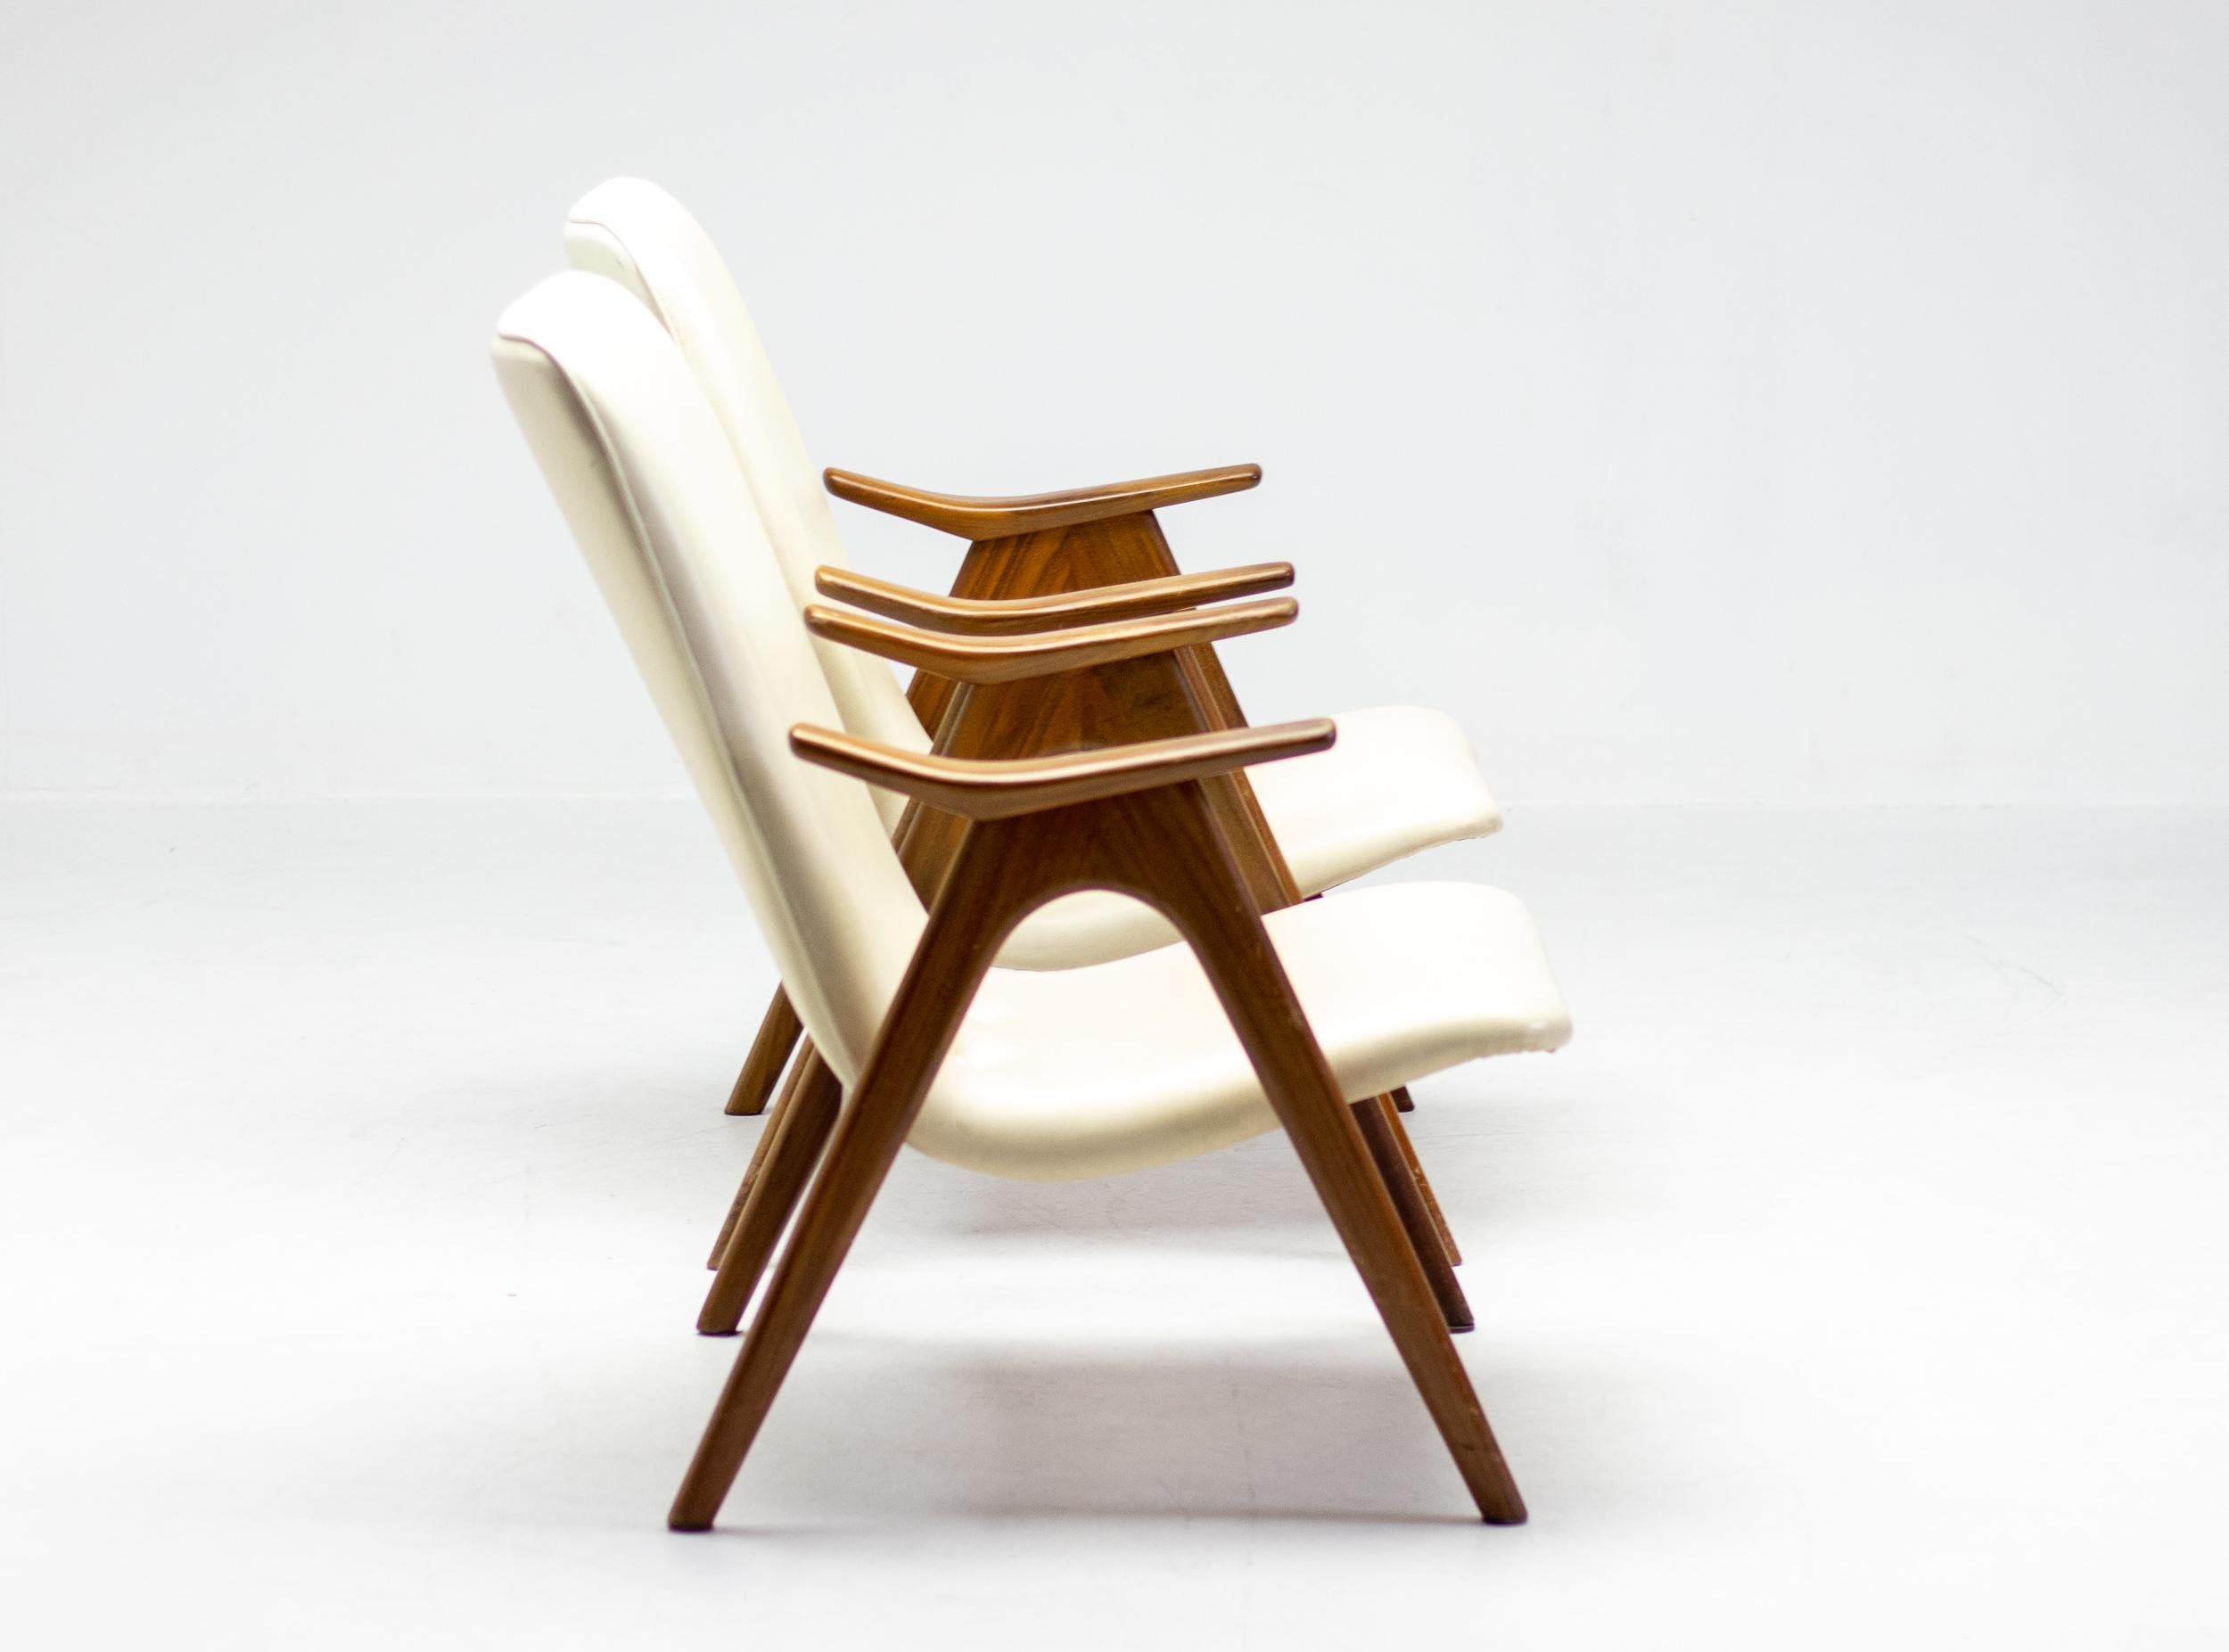 Ensemble original de 2 chaises longues conçues par le designer néerlandais Louis Van Teeffelen.
Le cadre en noyer et le revêtement en Naugahyde blanc cassé sont tous deux en très bon état.

Louis van Teeffelen (1921-1972) était un designer de